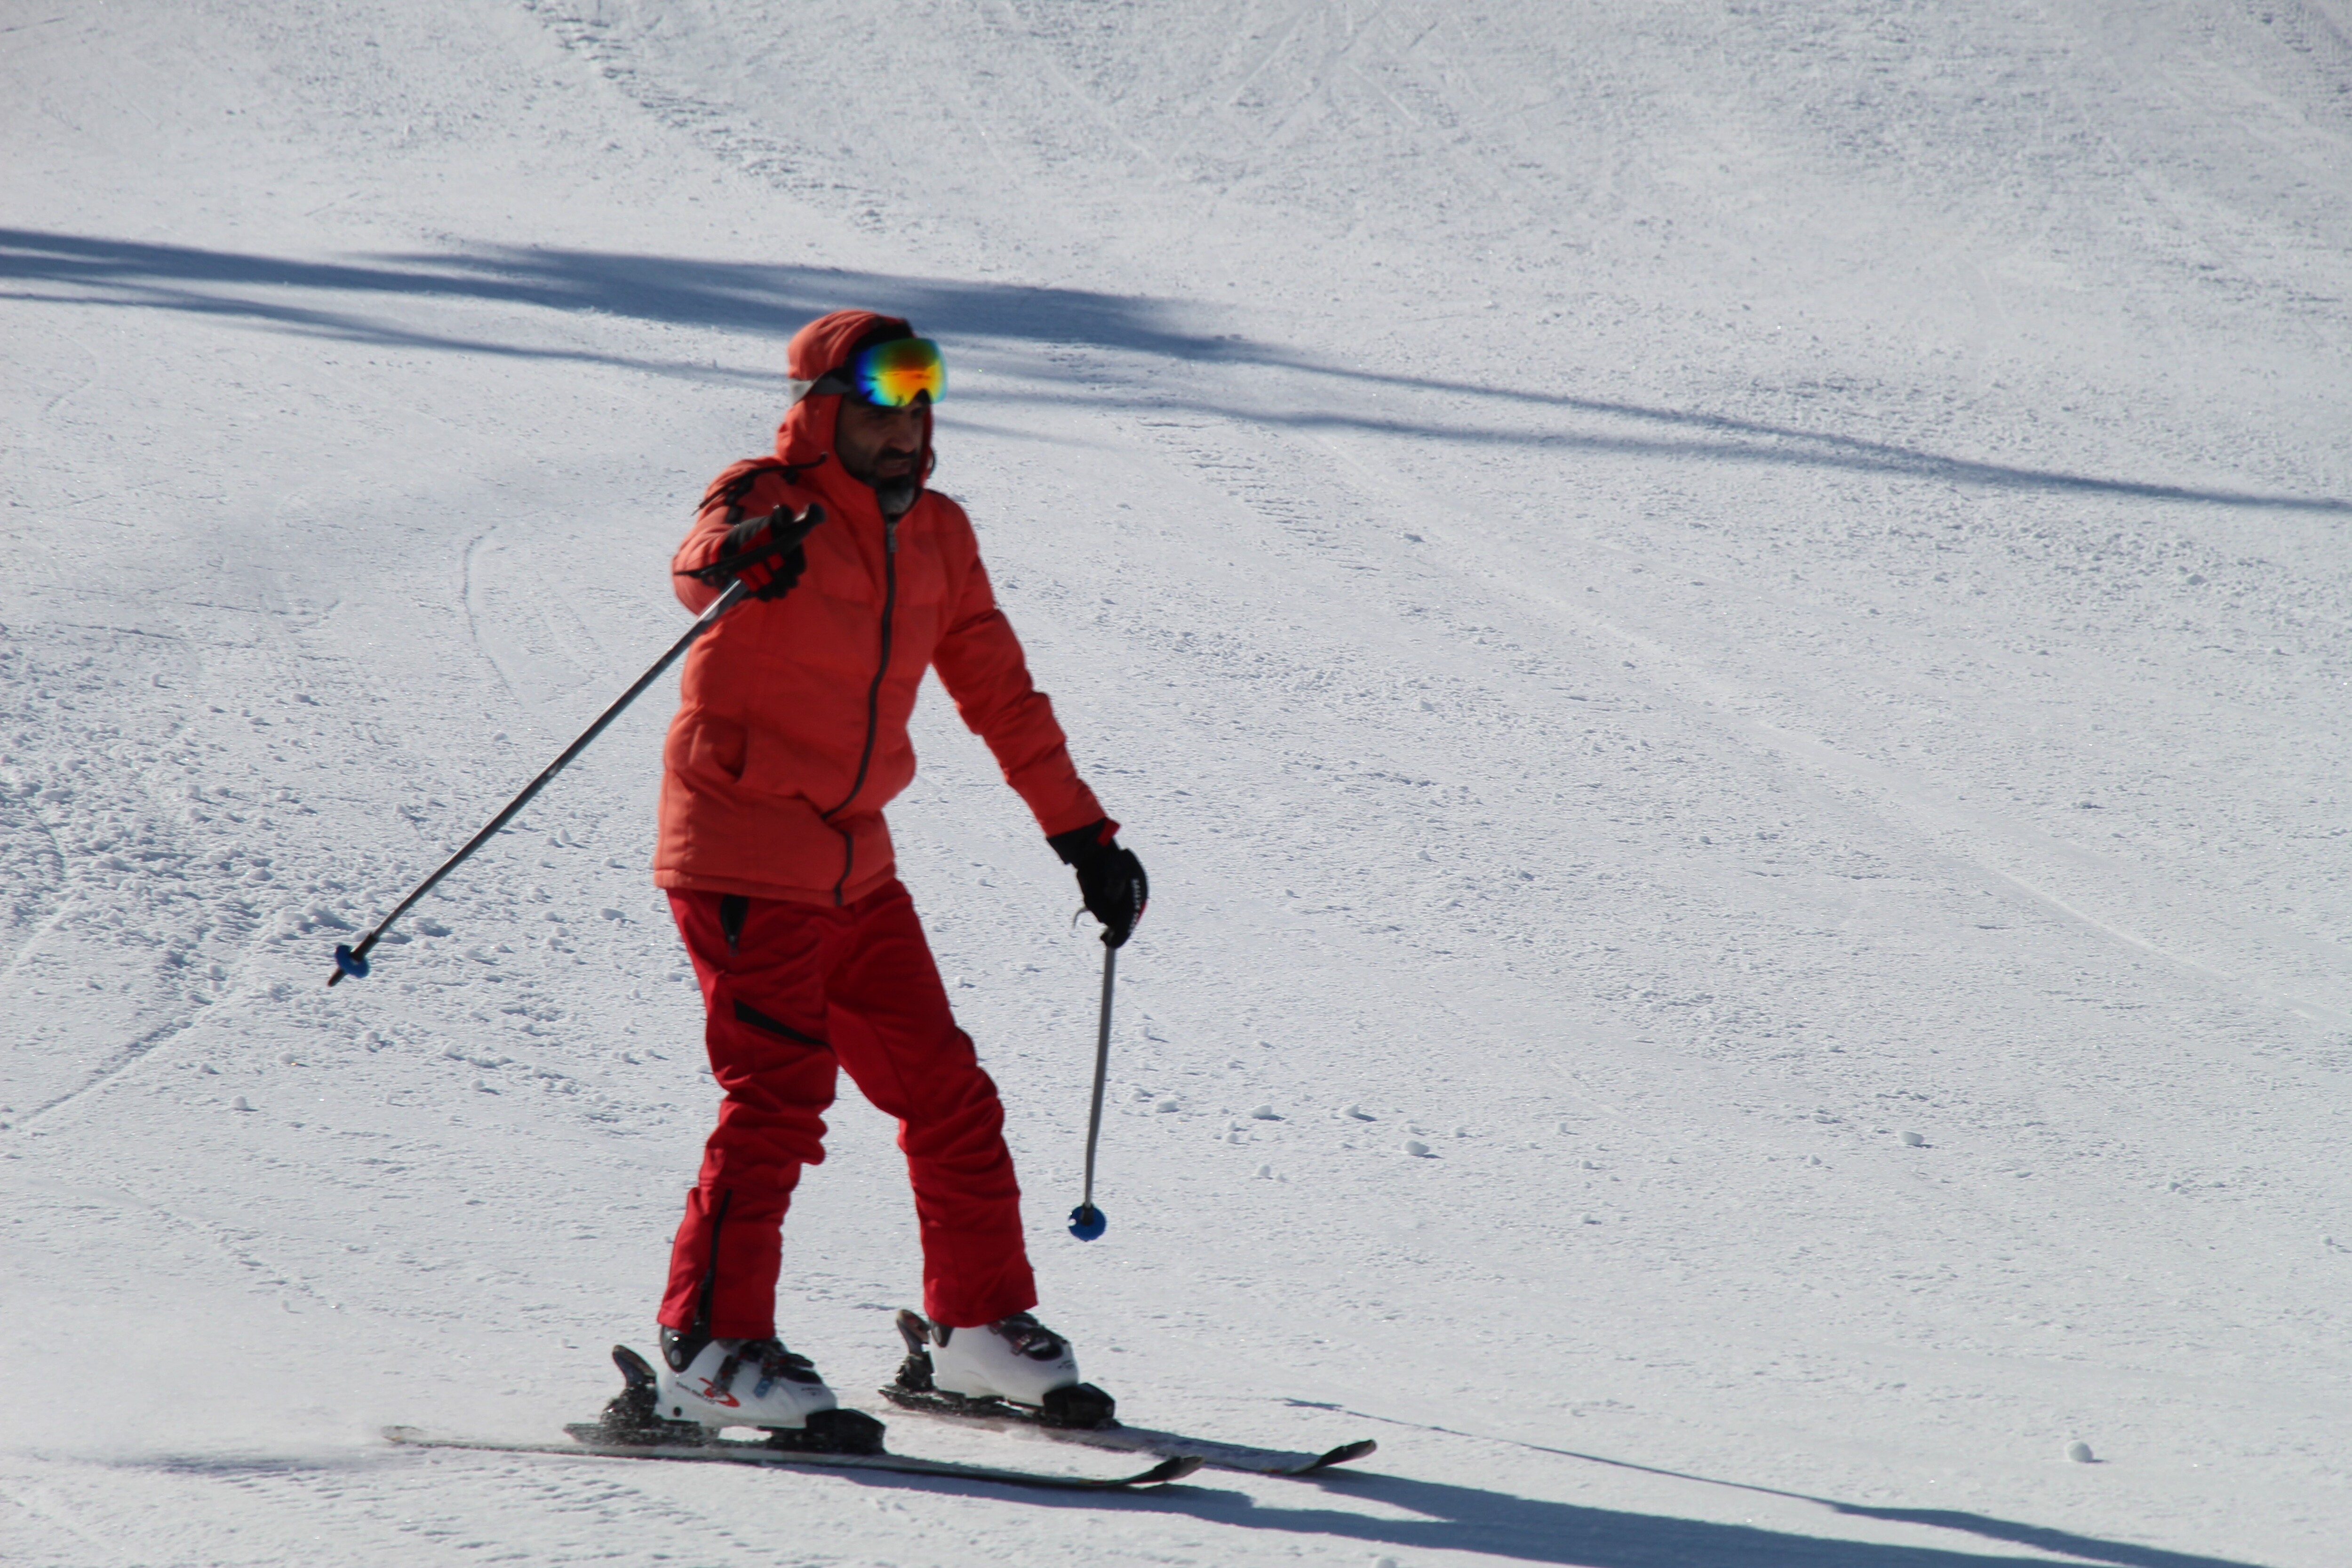 Bingöl'ün Doğu Anadolu Bölgesi'ndeki önemli kış sporları merkezlerinden biri olan Hesarek Kayak Merkezi, son 3 hafta içinde yaklaşık 25 bin ziyaretçiyi ağırladı. Hafta sonları özellikle yoğun olan merkez, bölgedeki kayak tutkunlarının ve ailelerinin tercihi haline geldi.